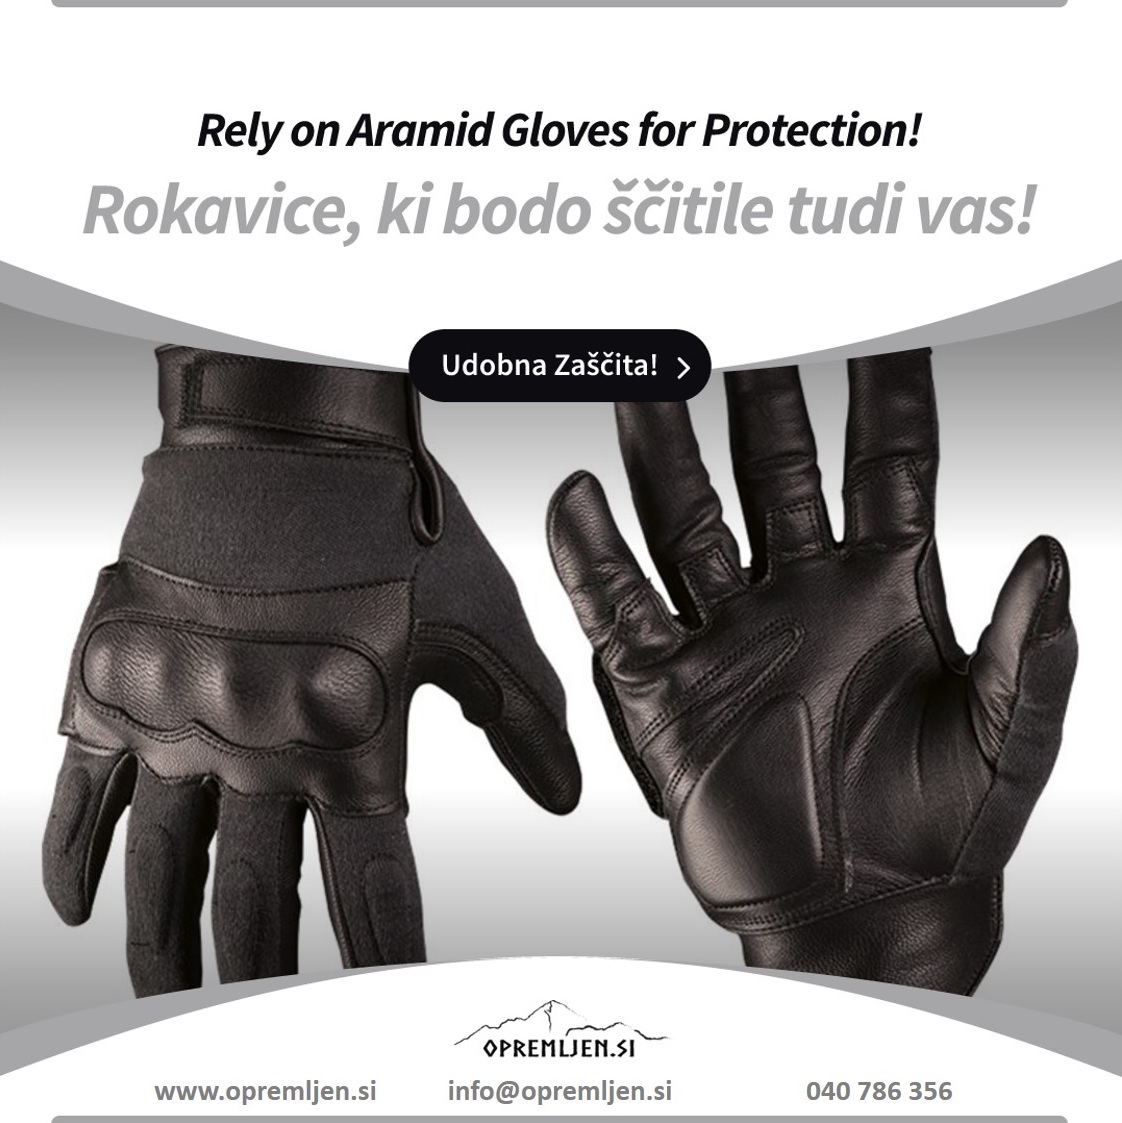 Taktične usnjene aramid rokavice odporne na reze in pike igel, črne barve, so visoko kakovostne in zanesljive rokavice, ki zagotavljajo zaščito vaših rok pri različnih aktivnostih na prostem. Izdelane so iz trpežnih materialov z ergonomskim dizajn